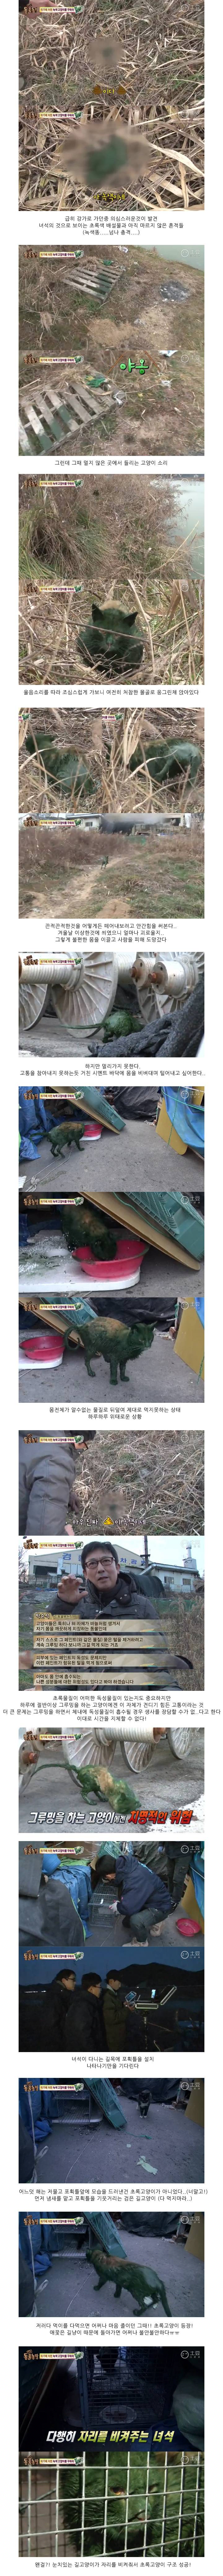 동물농장 '위기에 처한 녹색 고양이를 구하라' | 인스티즈